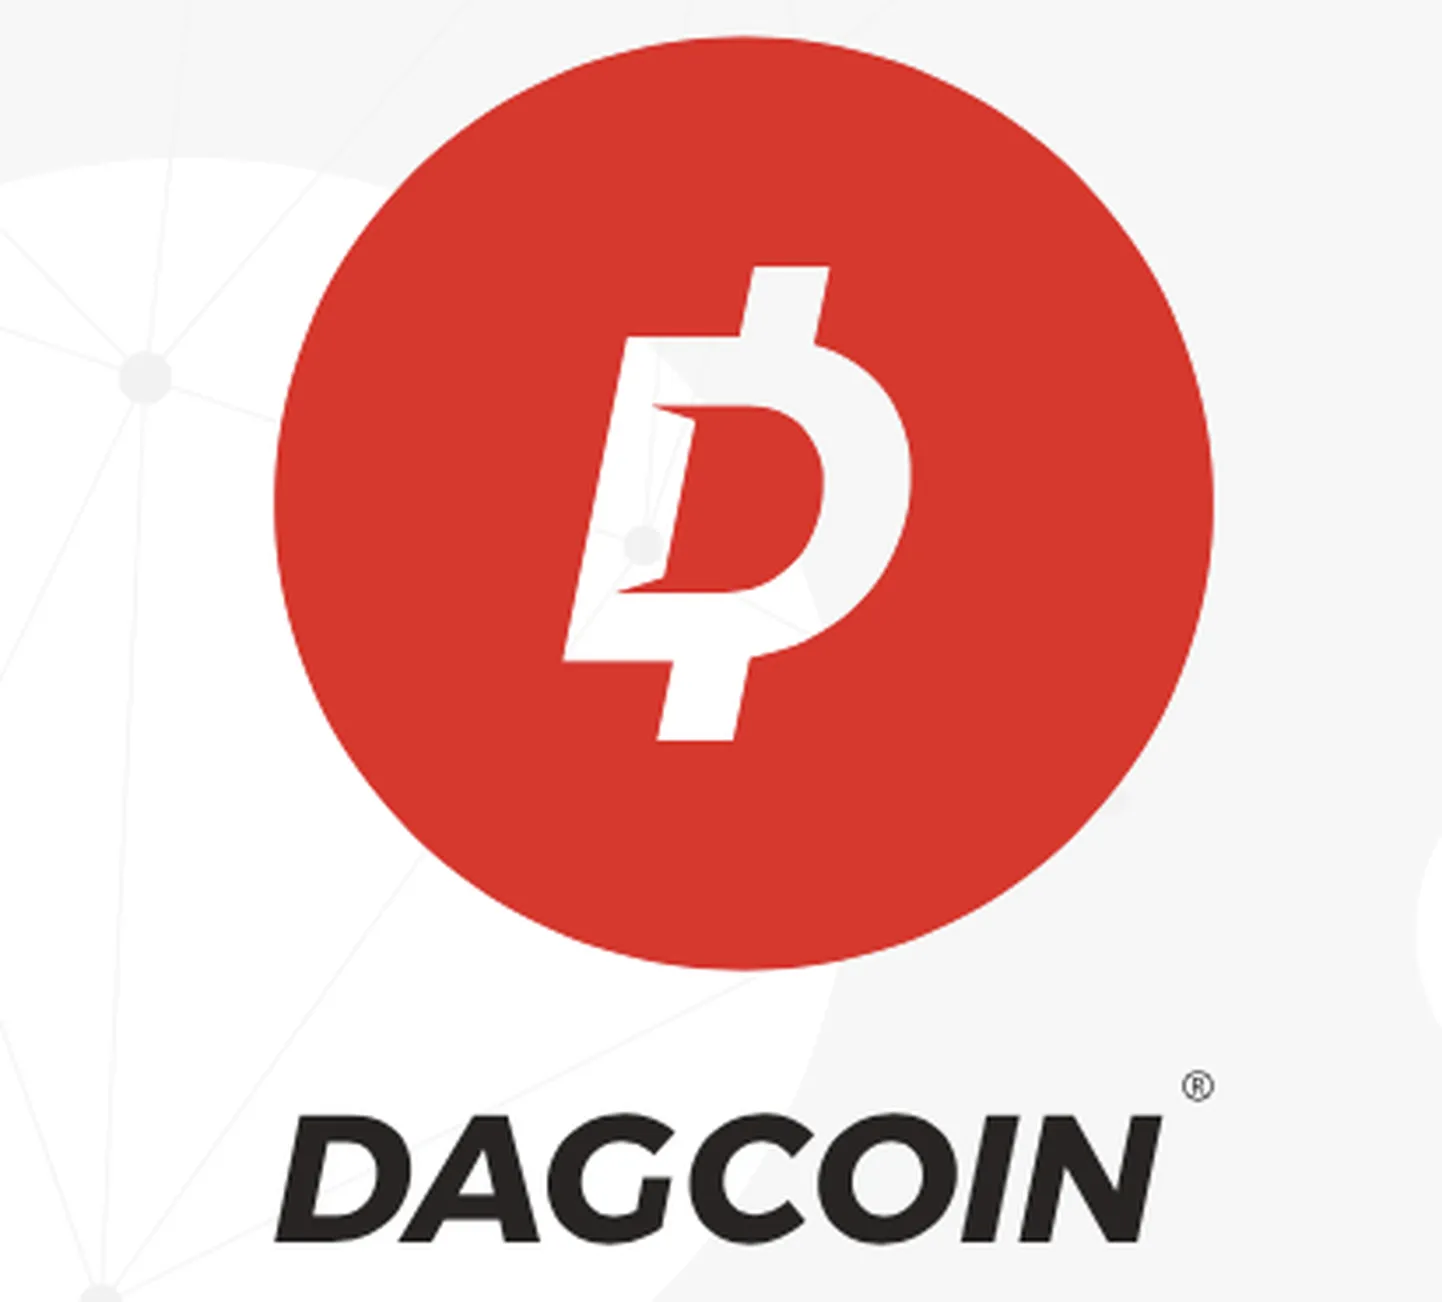 Dagcoin logo.